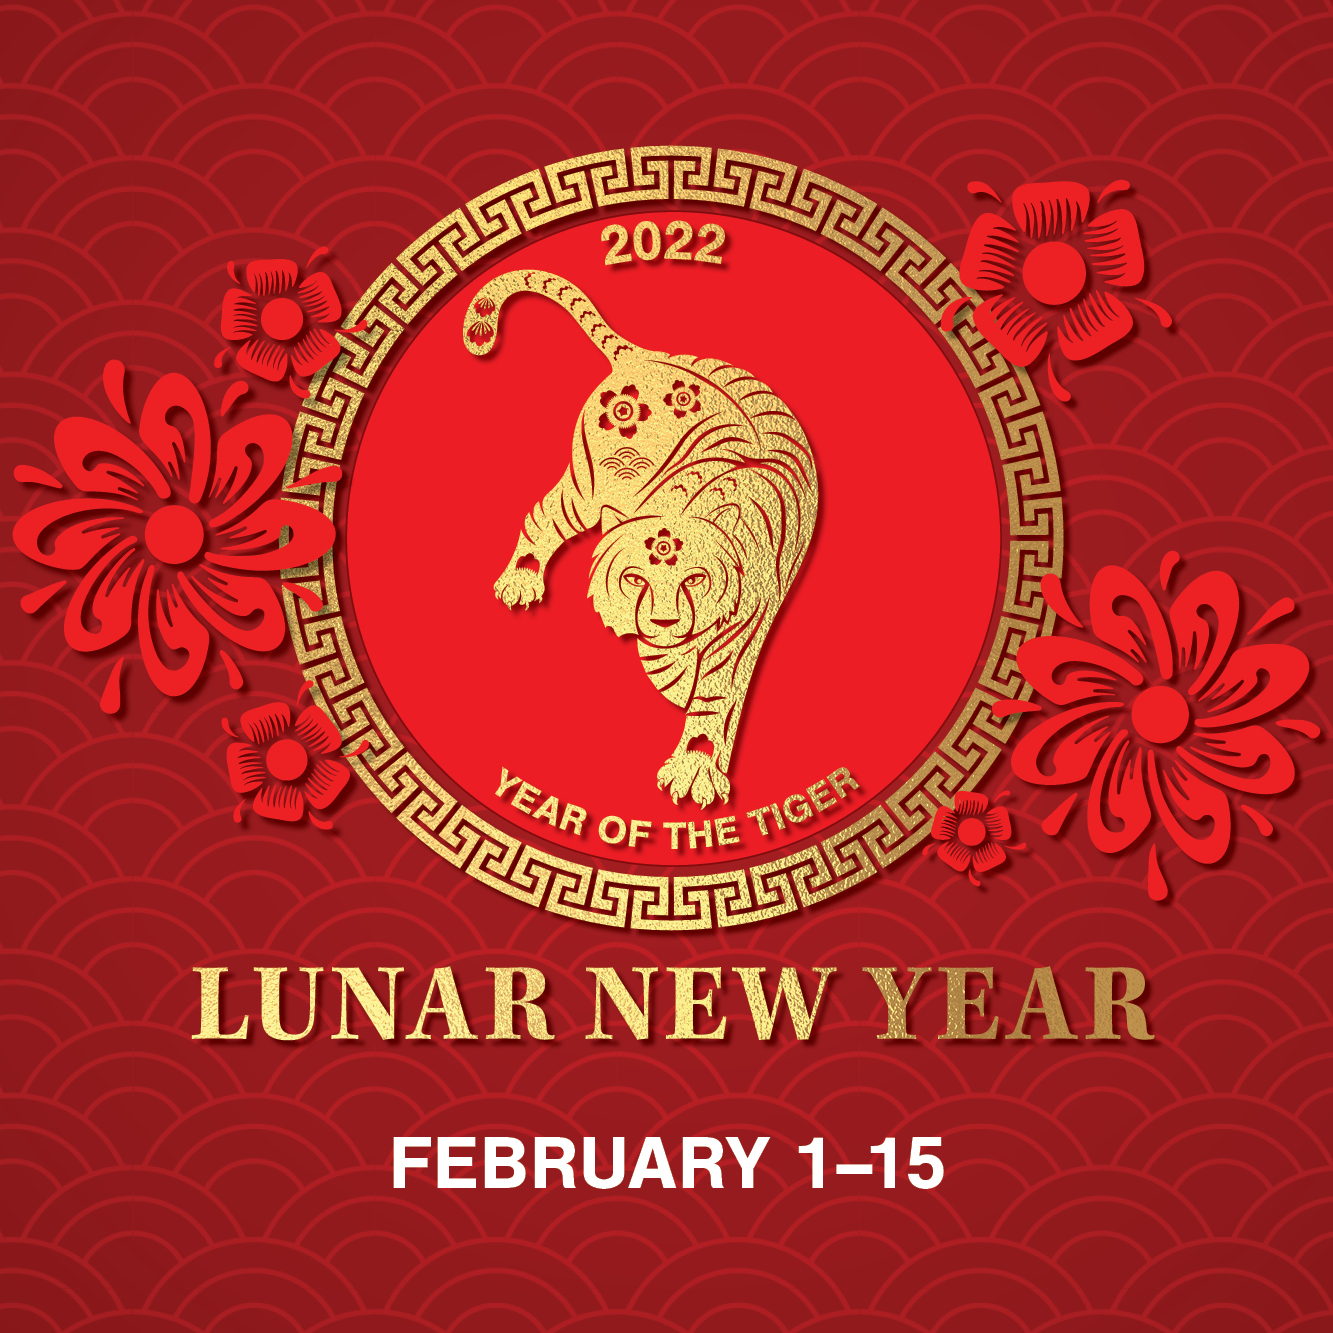 Lunar New Year at Fashion Island